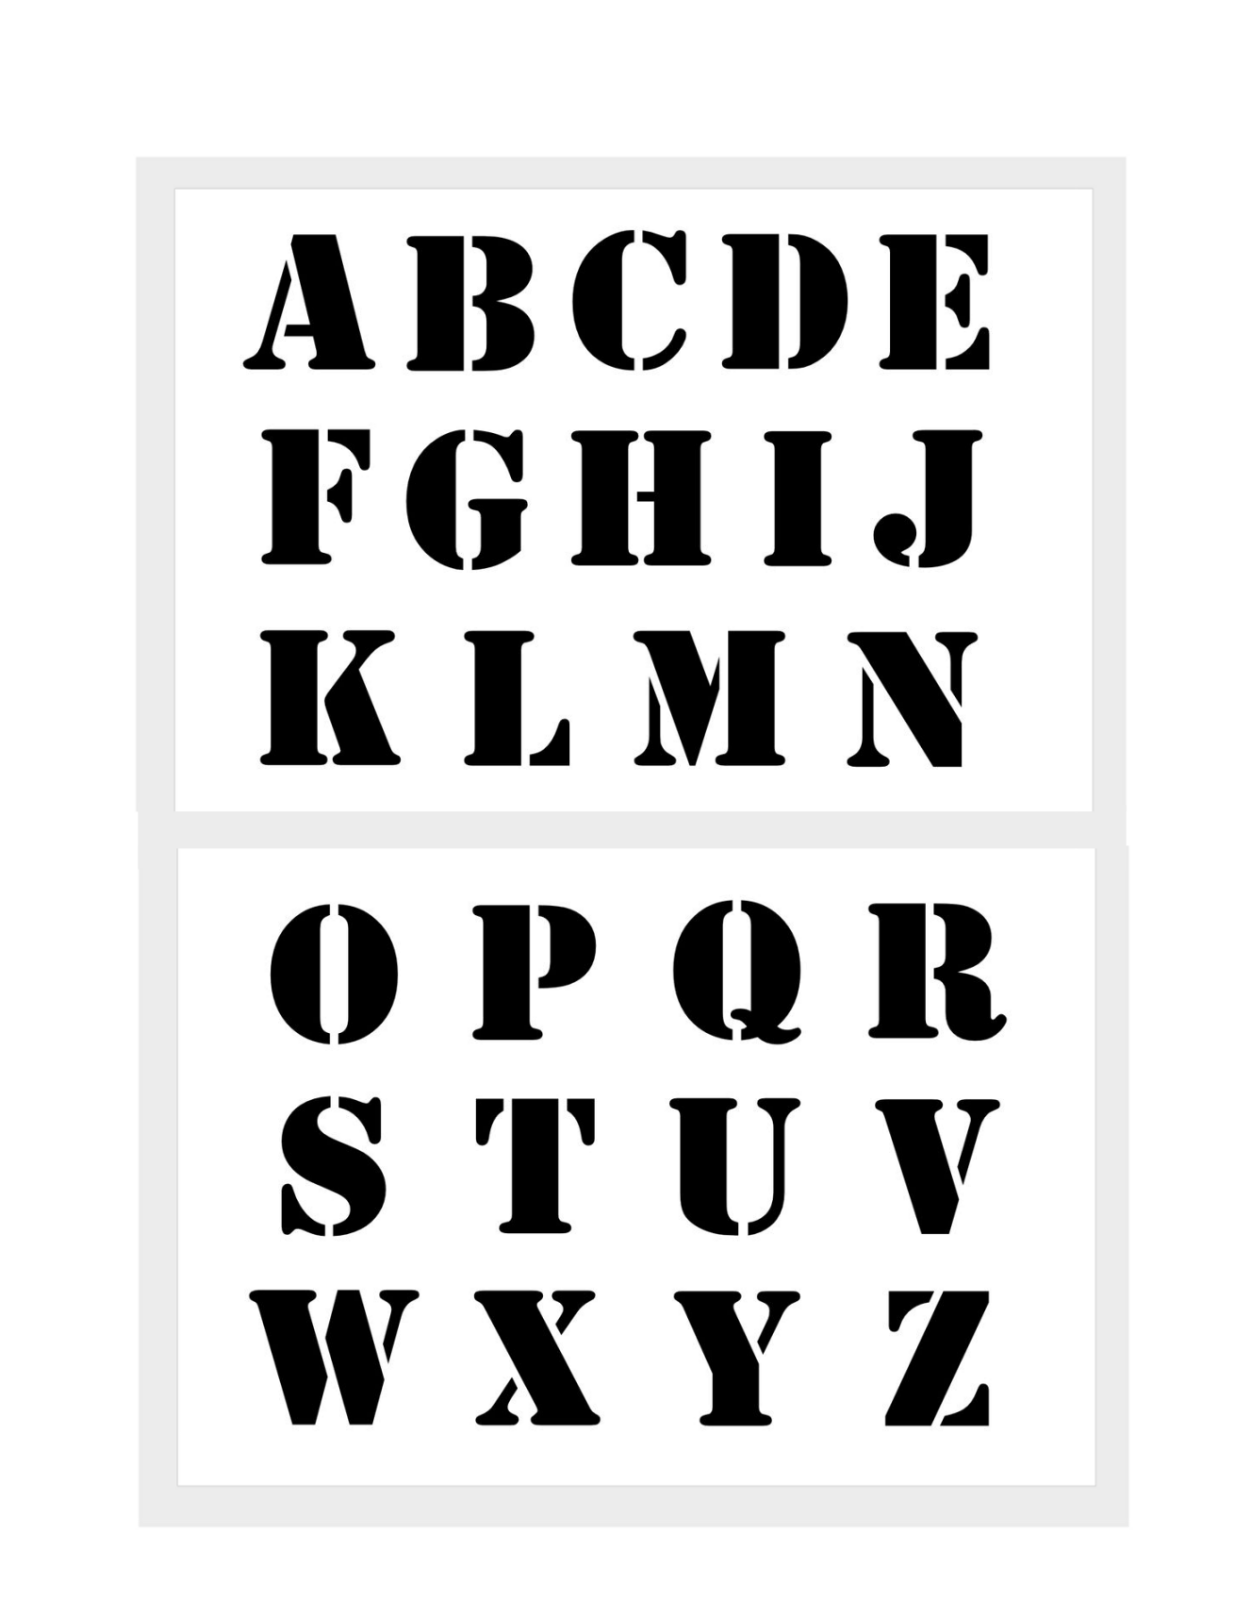 Druck Buchstaben Groß 5cm Hoch Abc Schablone Nr. 5 Alphabet 2 Schriftschablonen